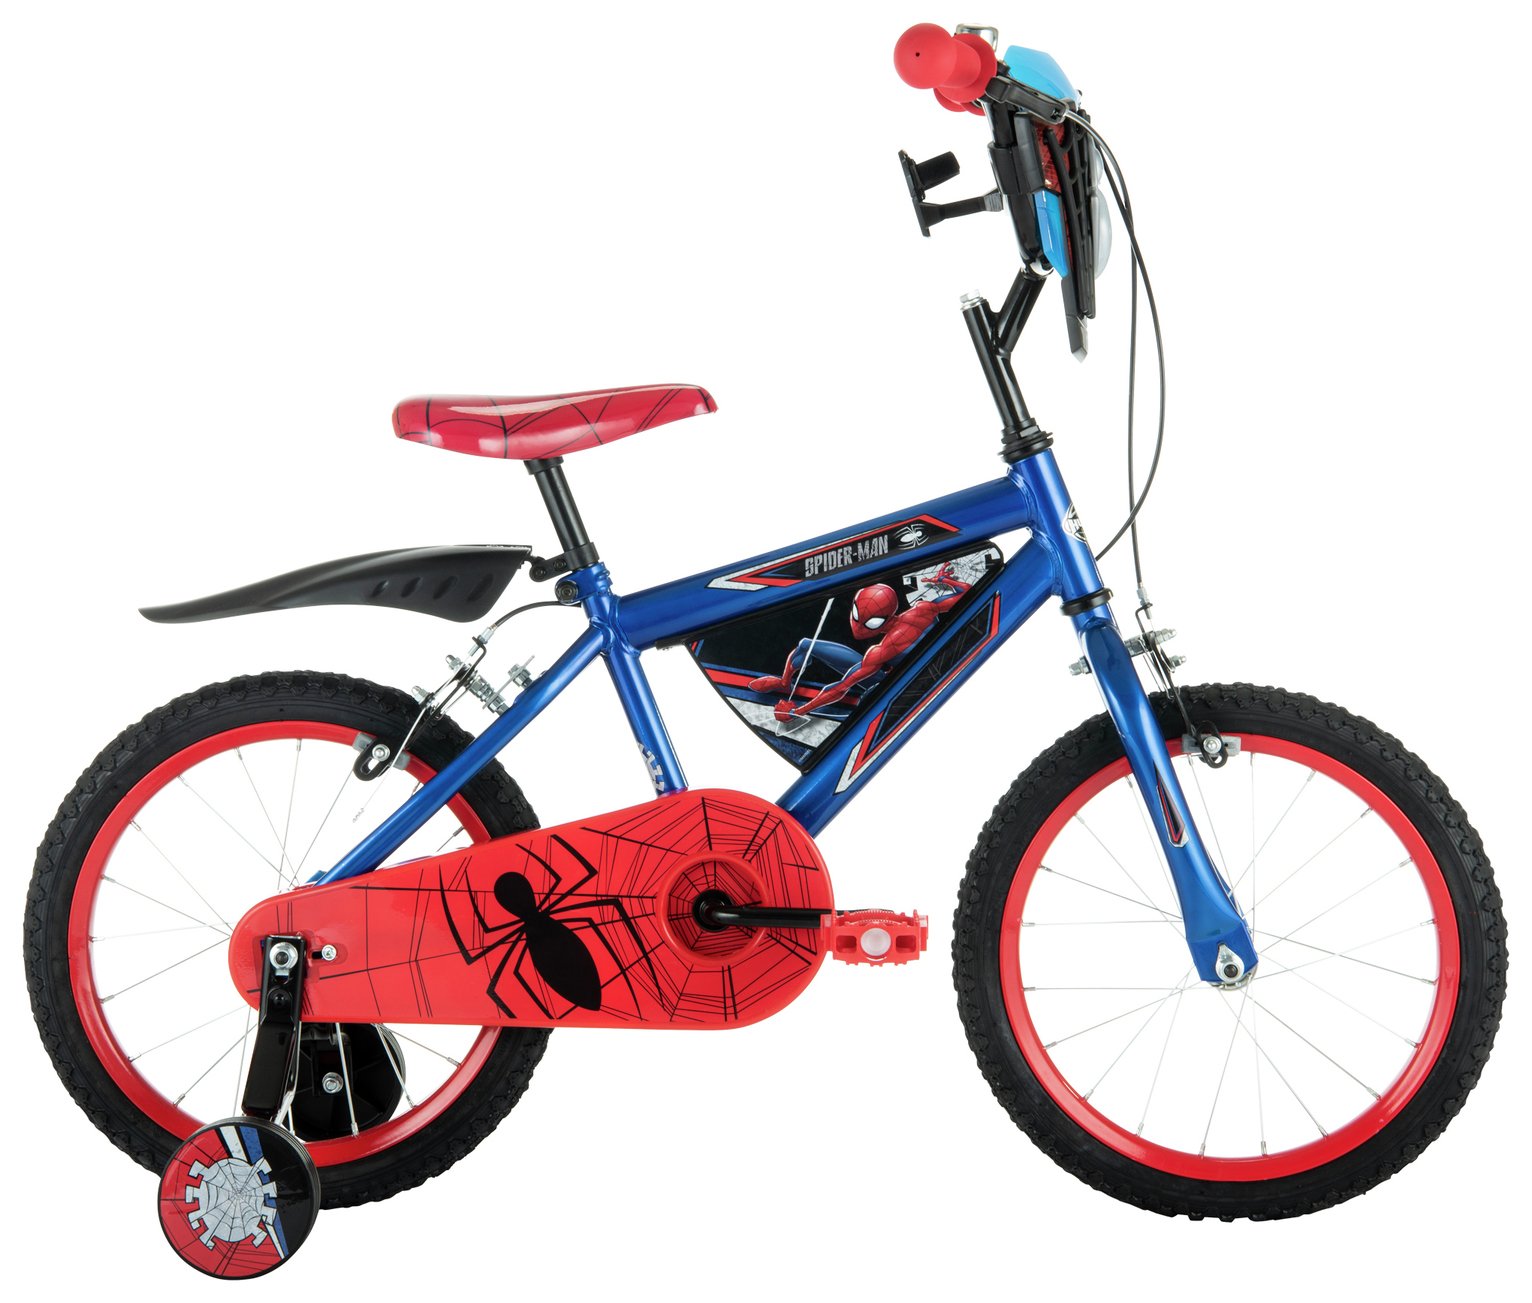 Disney Marvel Spider-Man 16 inch Wheel Size Kids Bike - Red